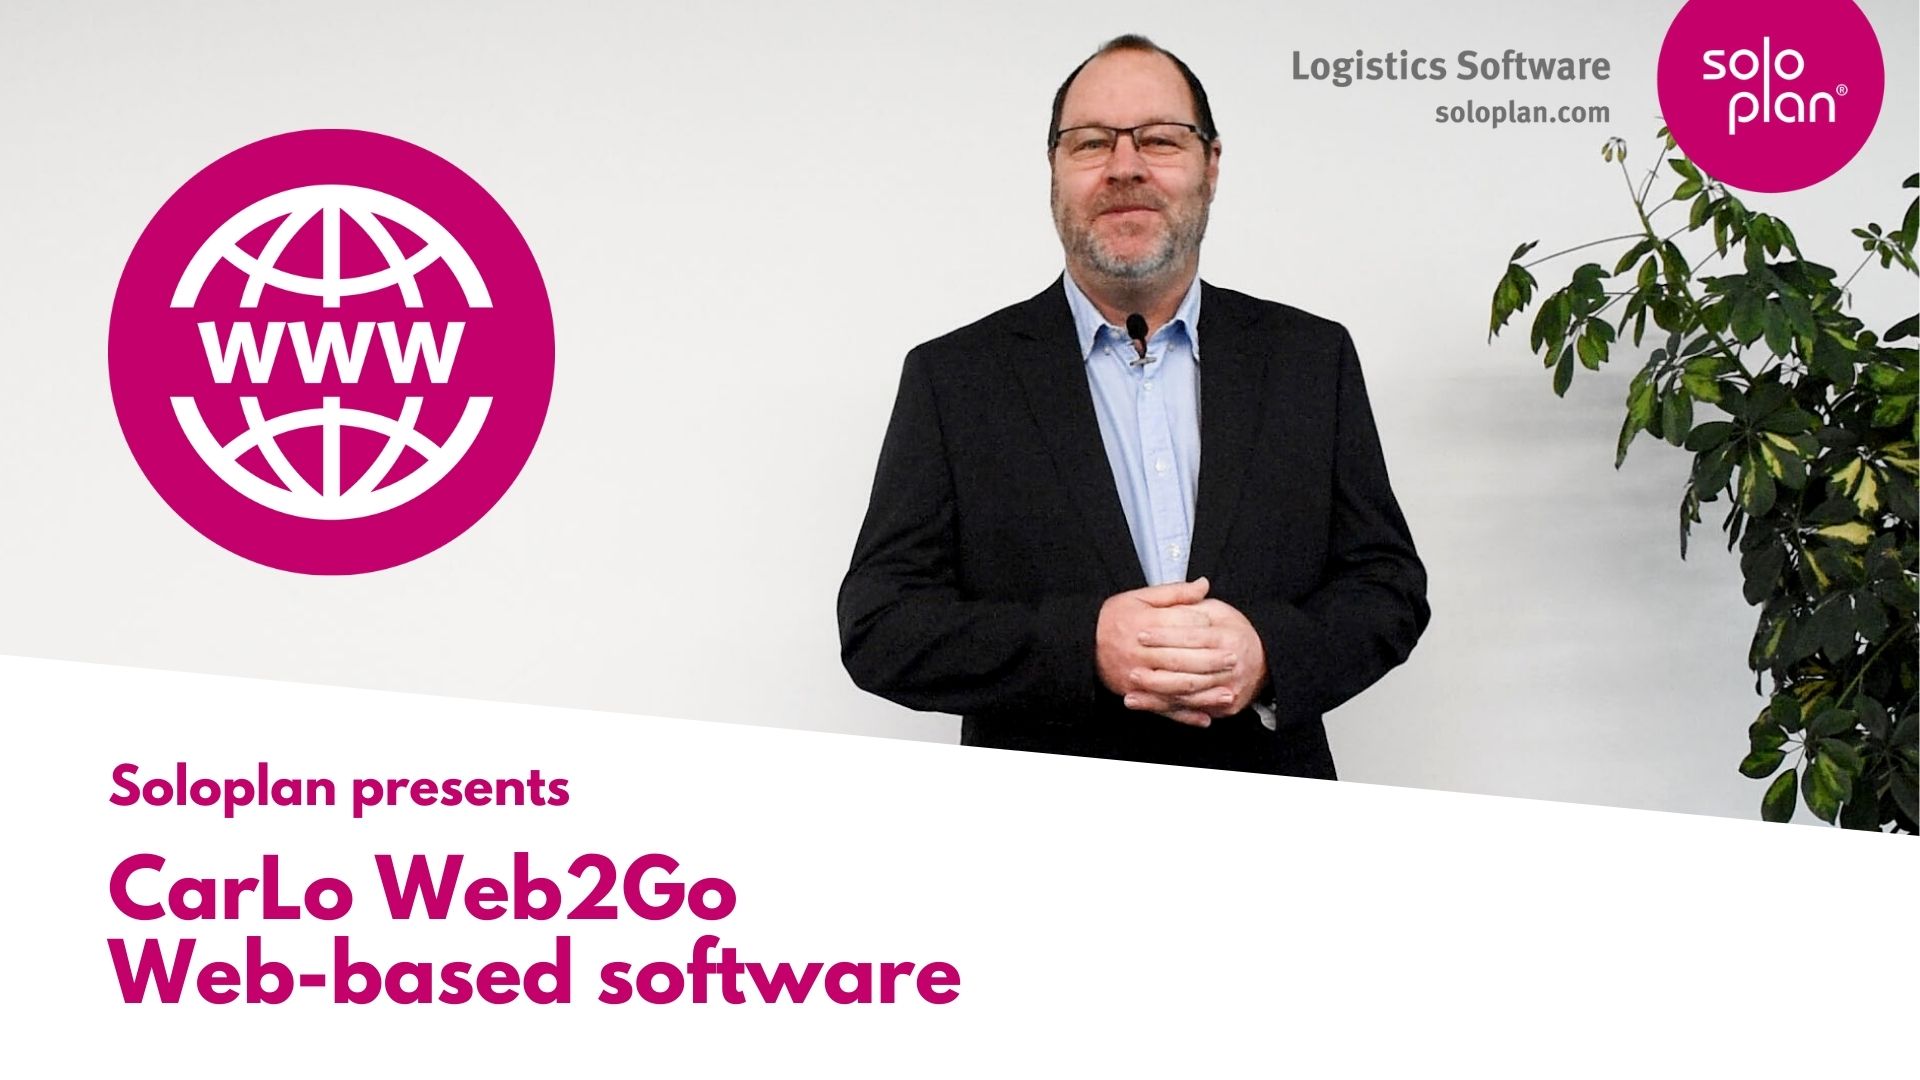  CarLo Web2Go - internetowe oprogramowanie logistyczne